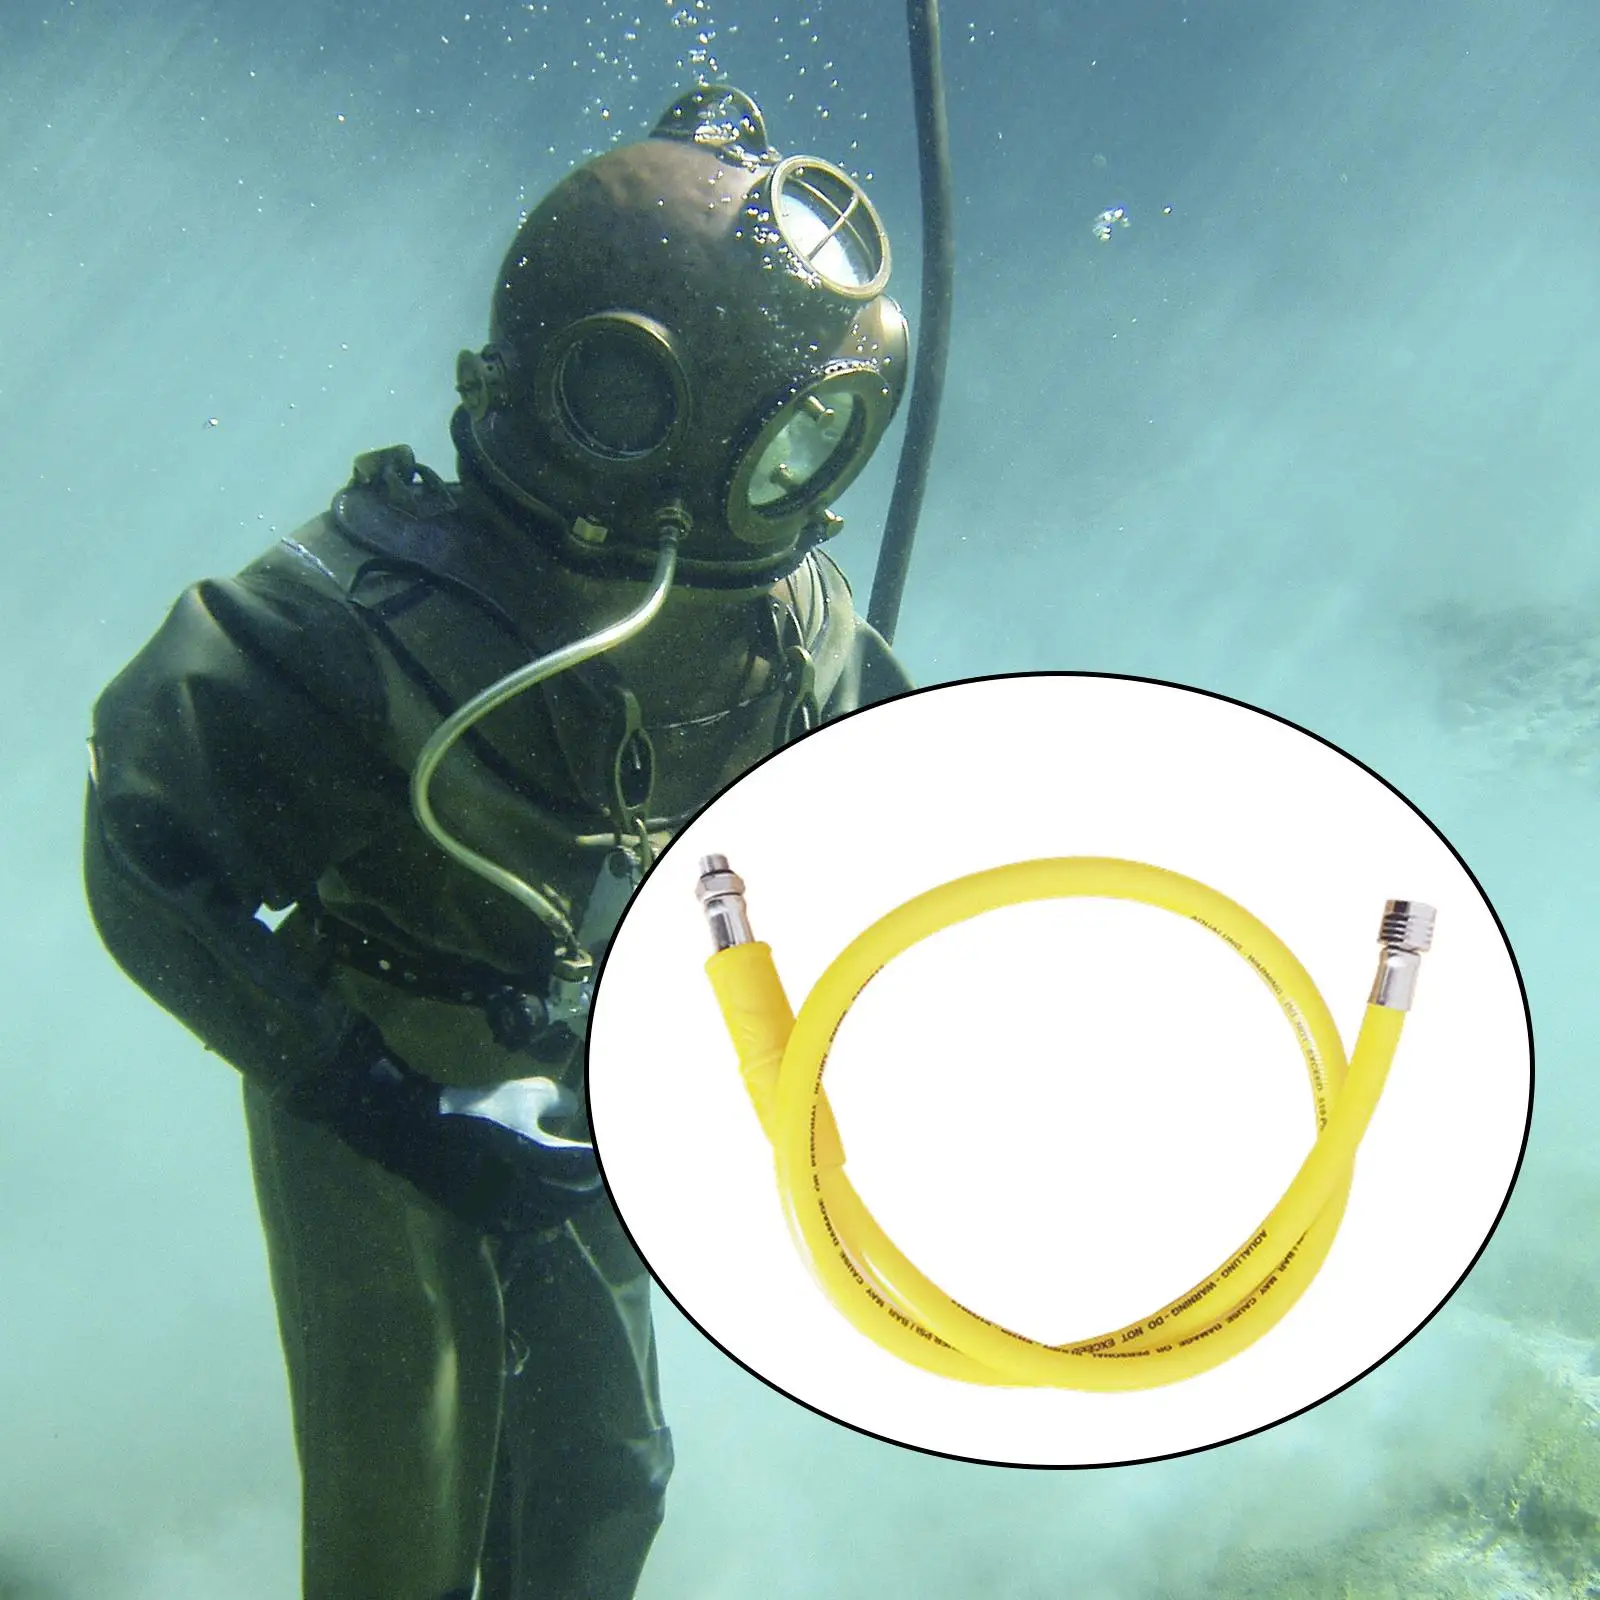 Submersible Medium Pressure Hose Scuba Diving Regulator for Snorkeling